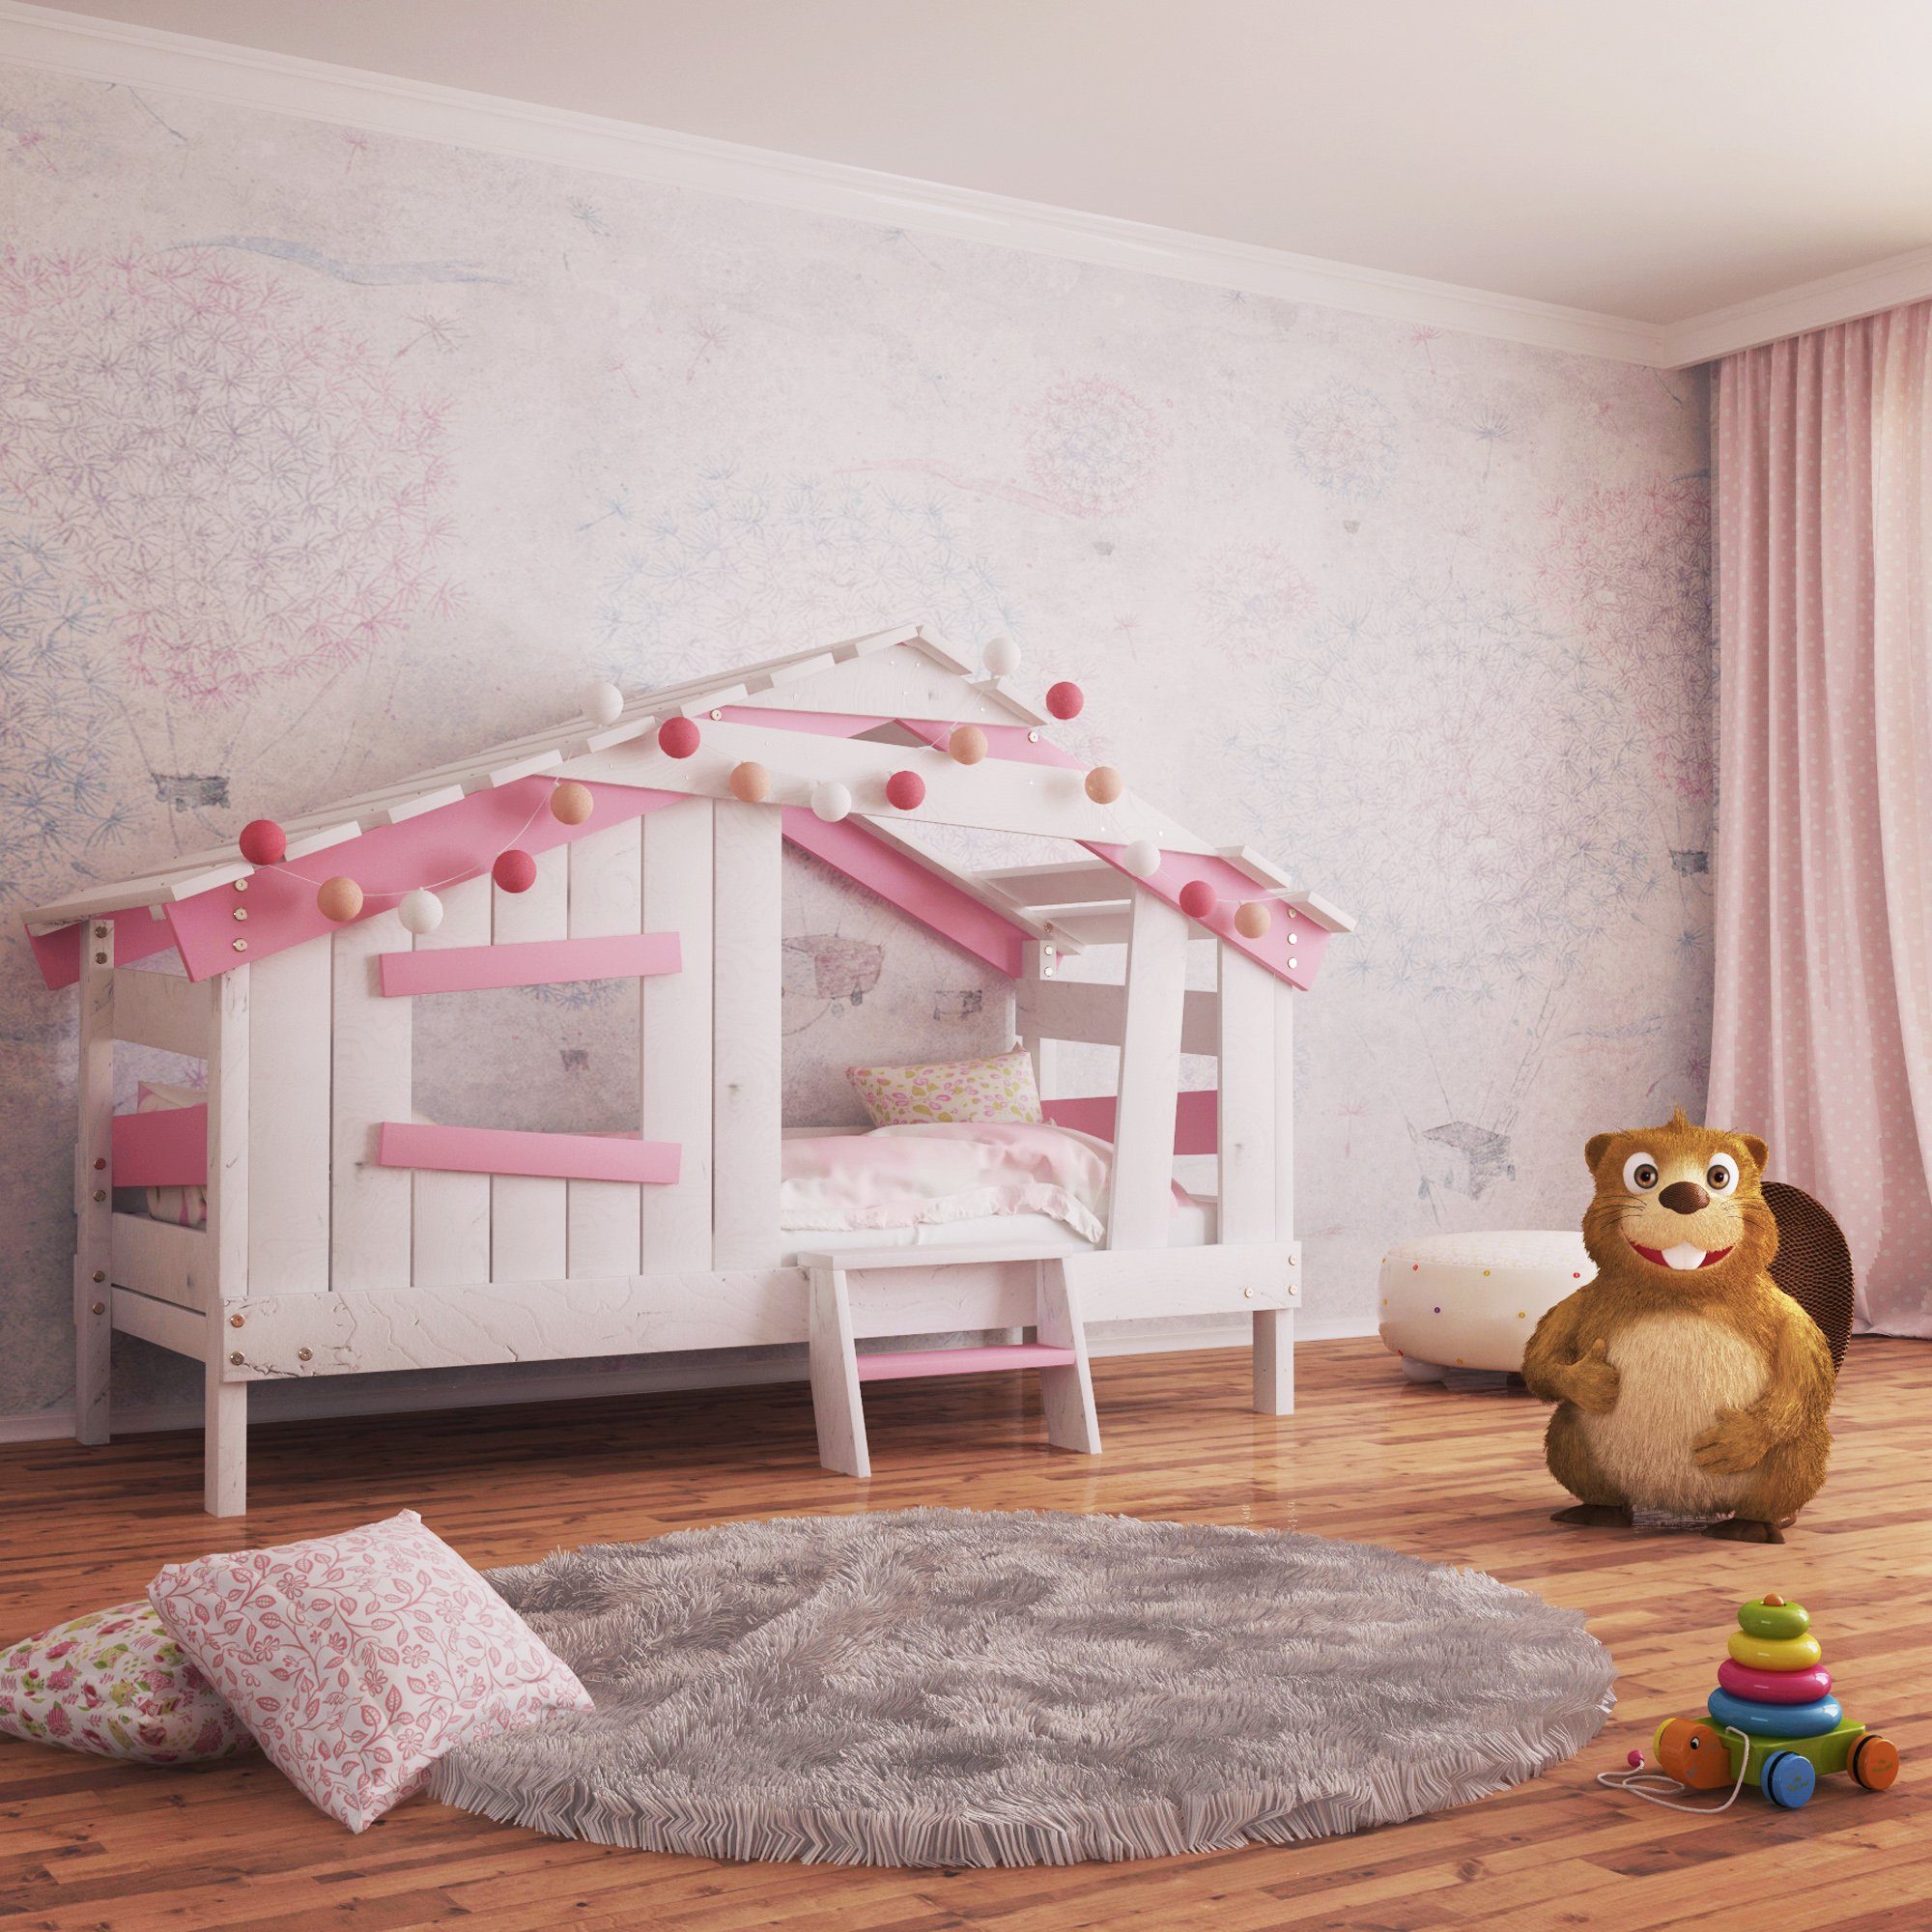 APART Spielbett, bibex zart-rosa Jugendbett, Kinderbett CHALET Kinderbett,